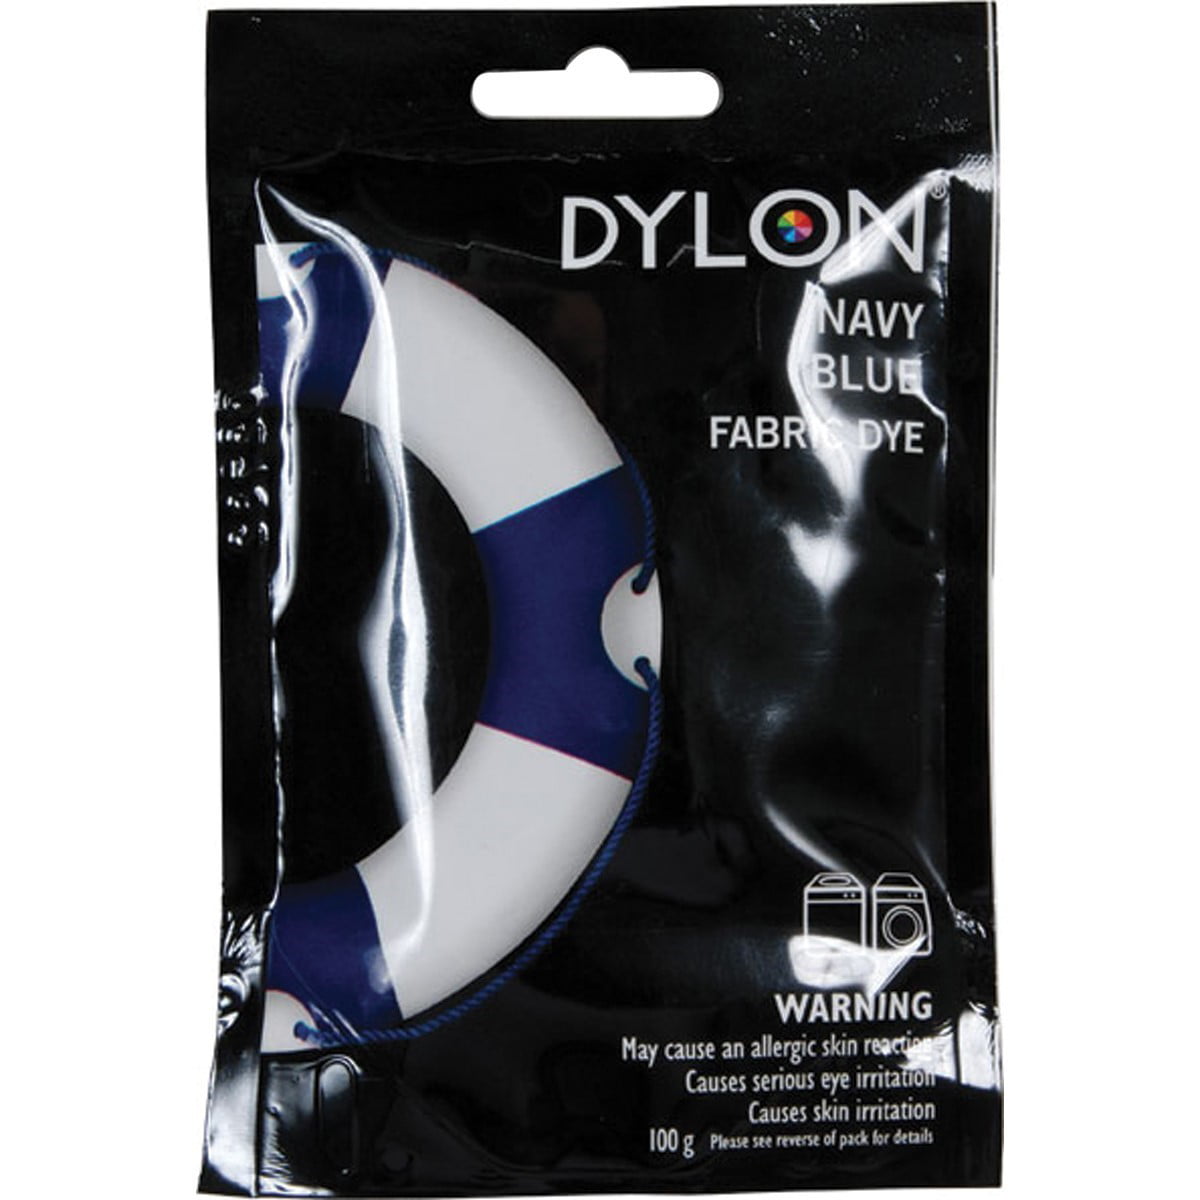 Dylon Dye - Navy Blue